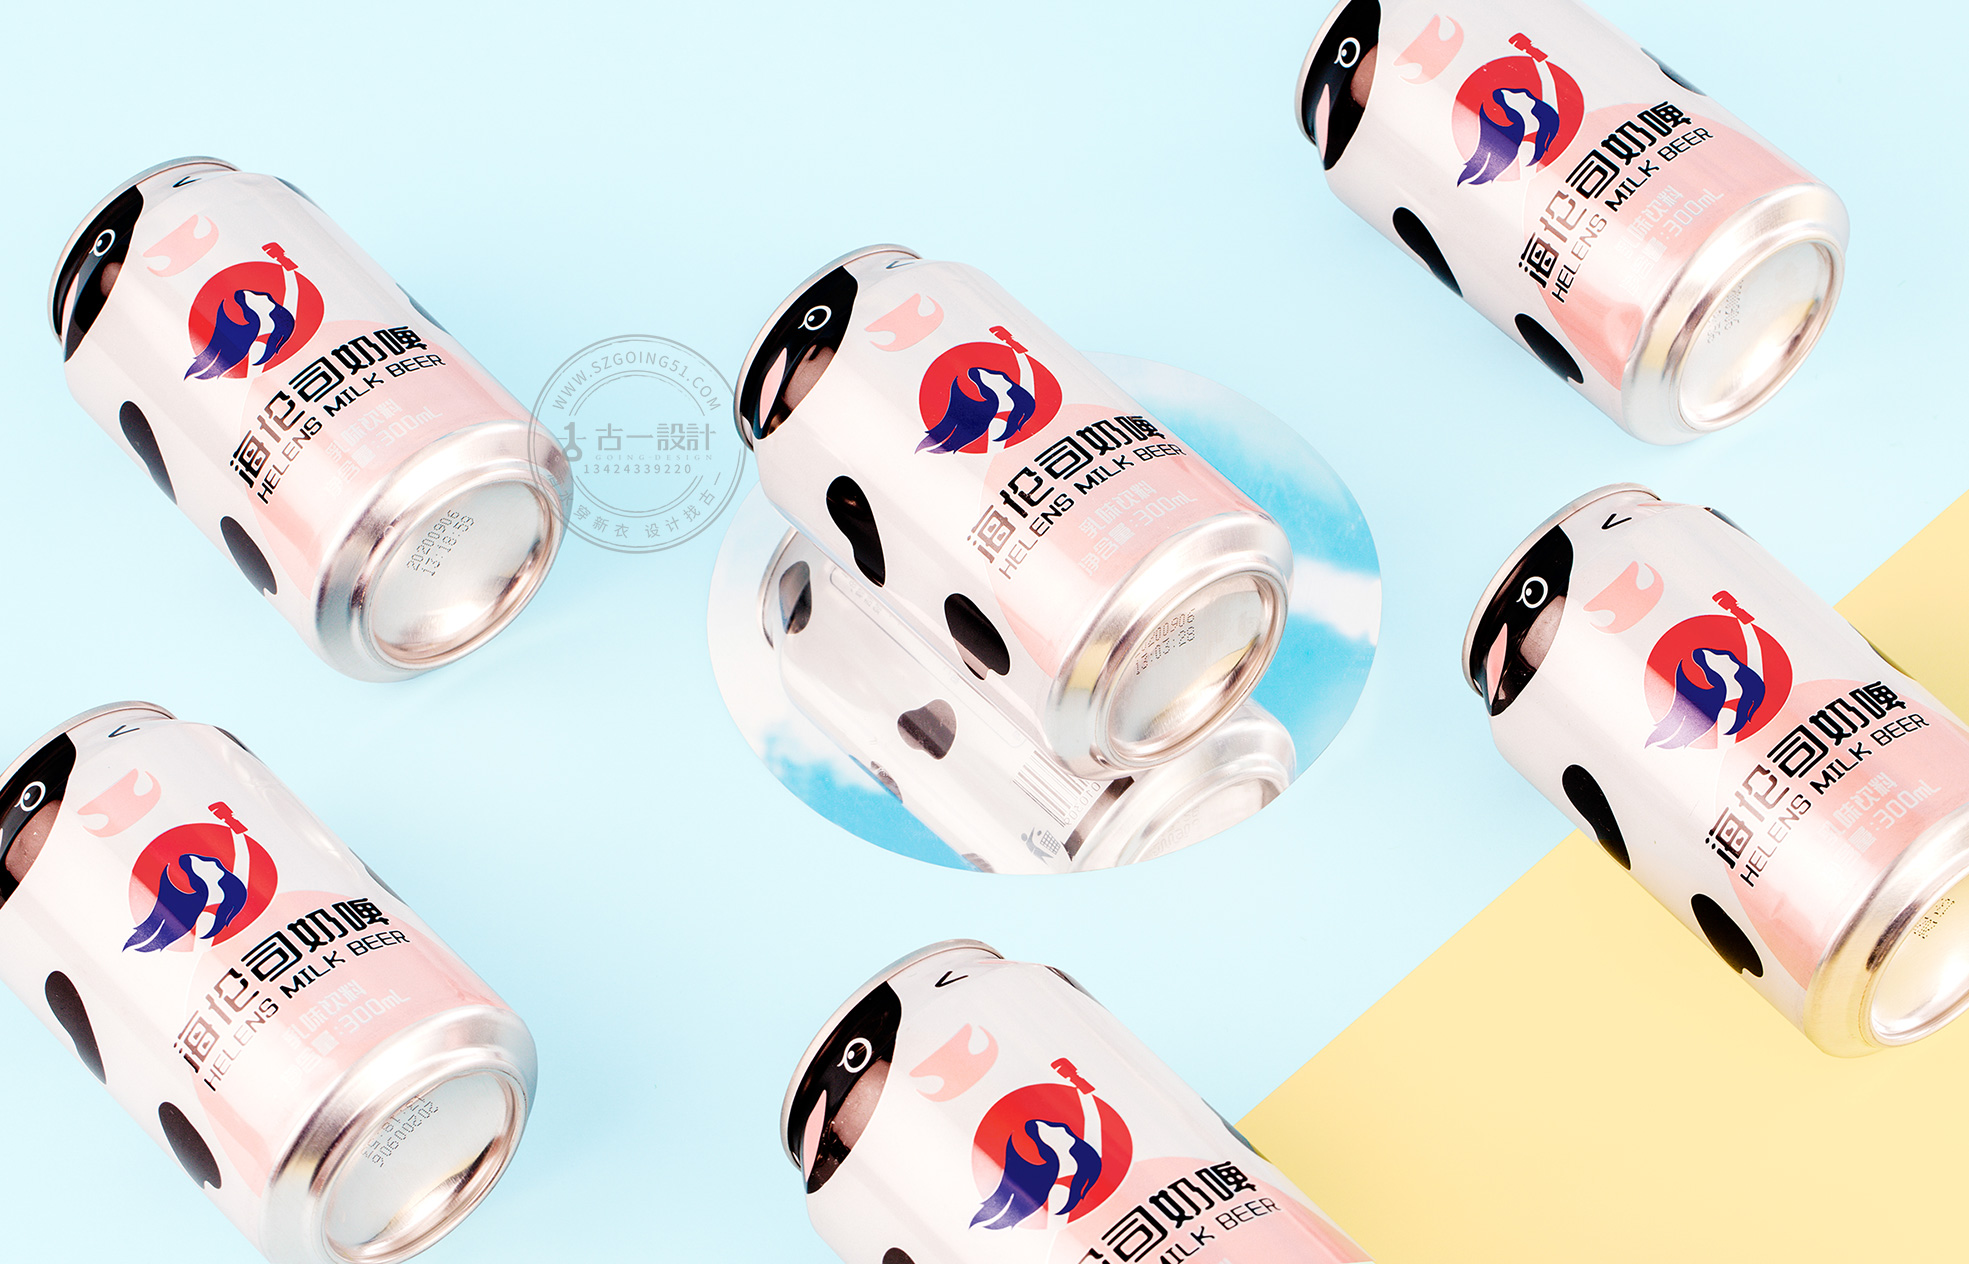 深圳创意包装设计公司古一设计 奶啤包装设计 奶啤标签设计